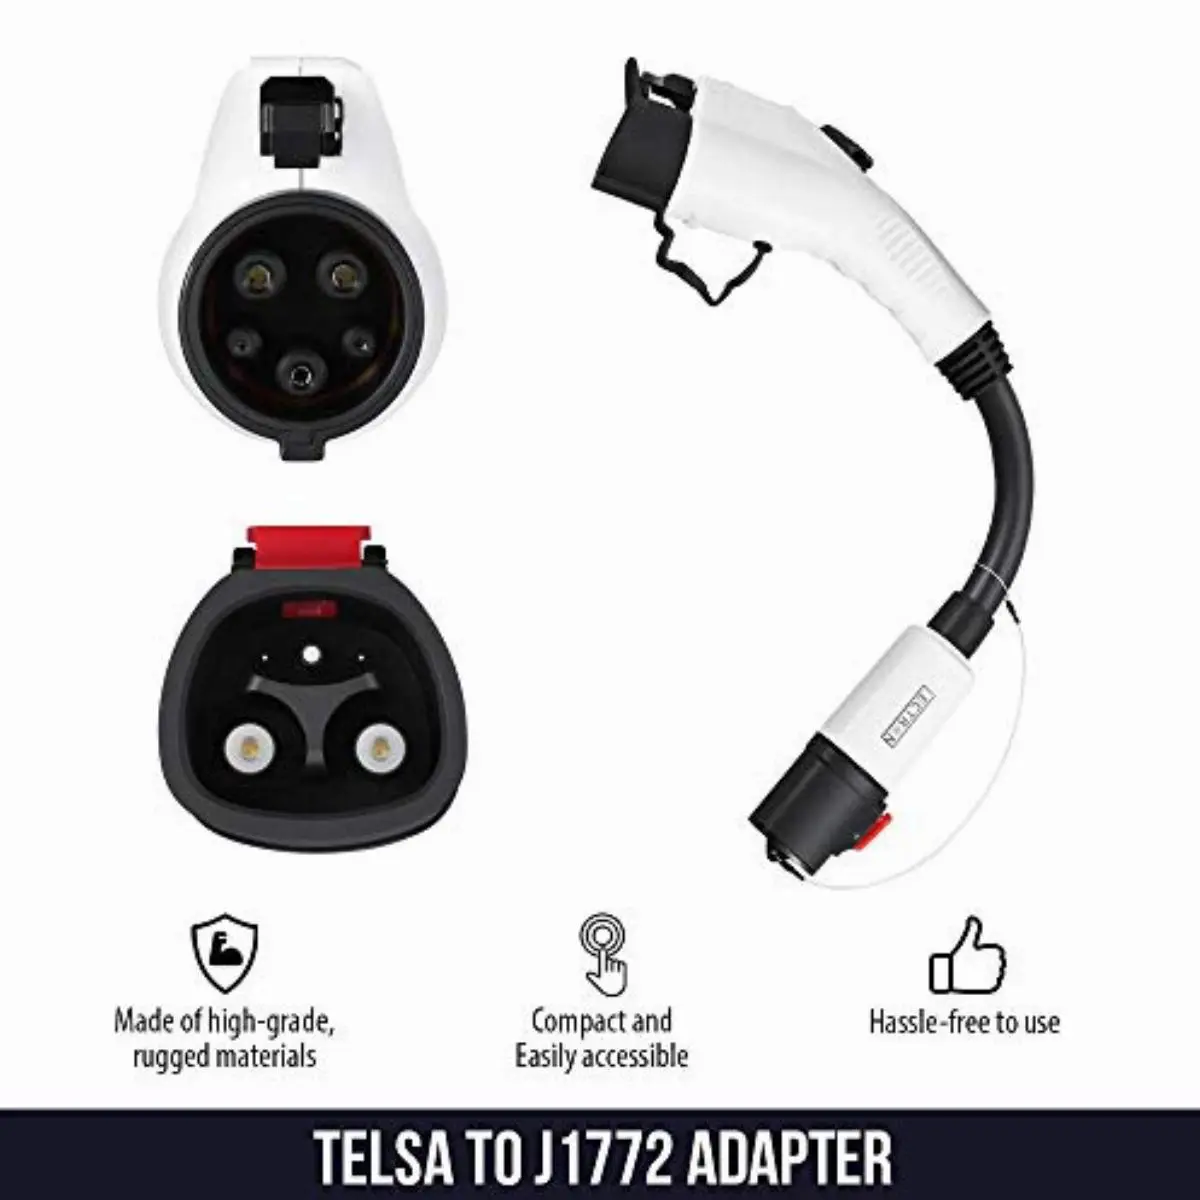 Tesla Adapter